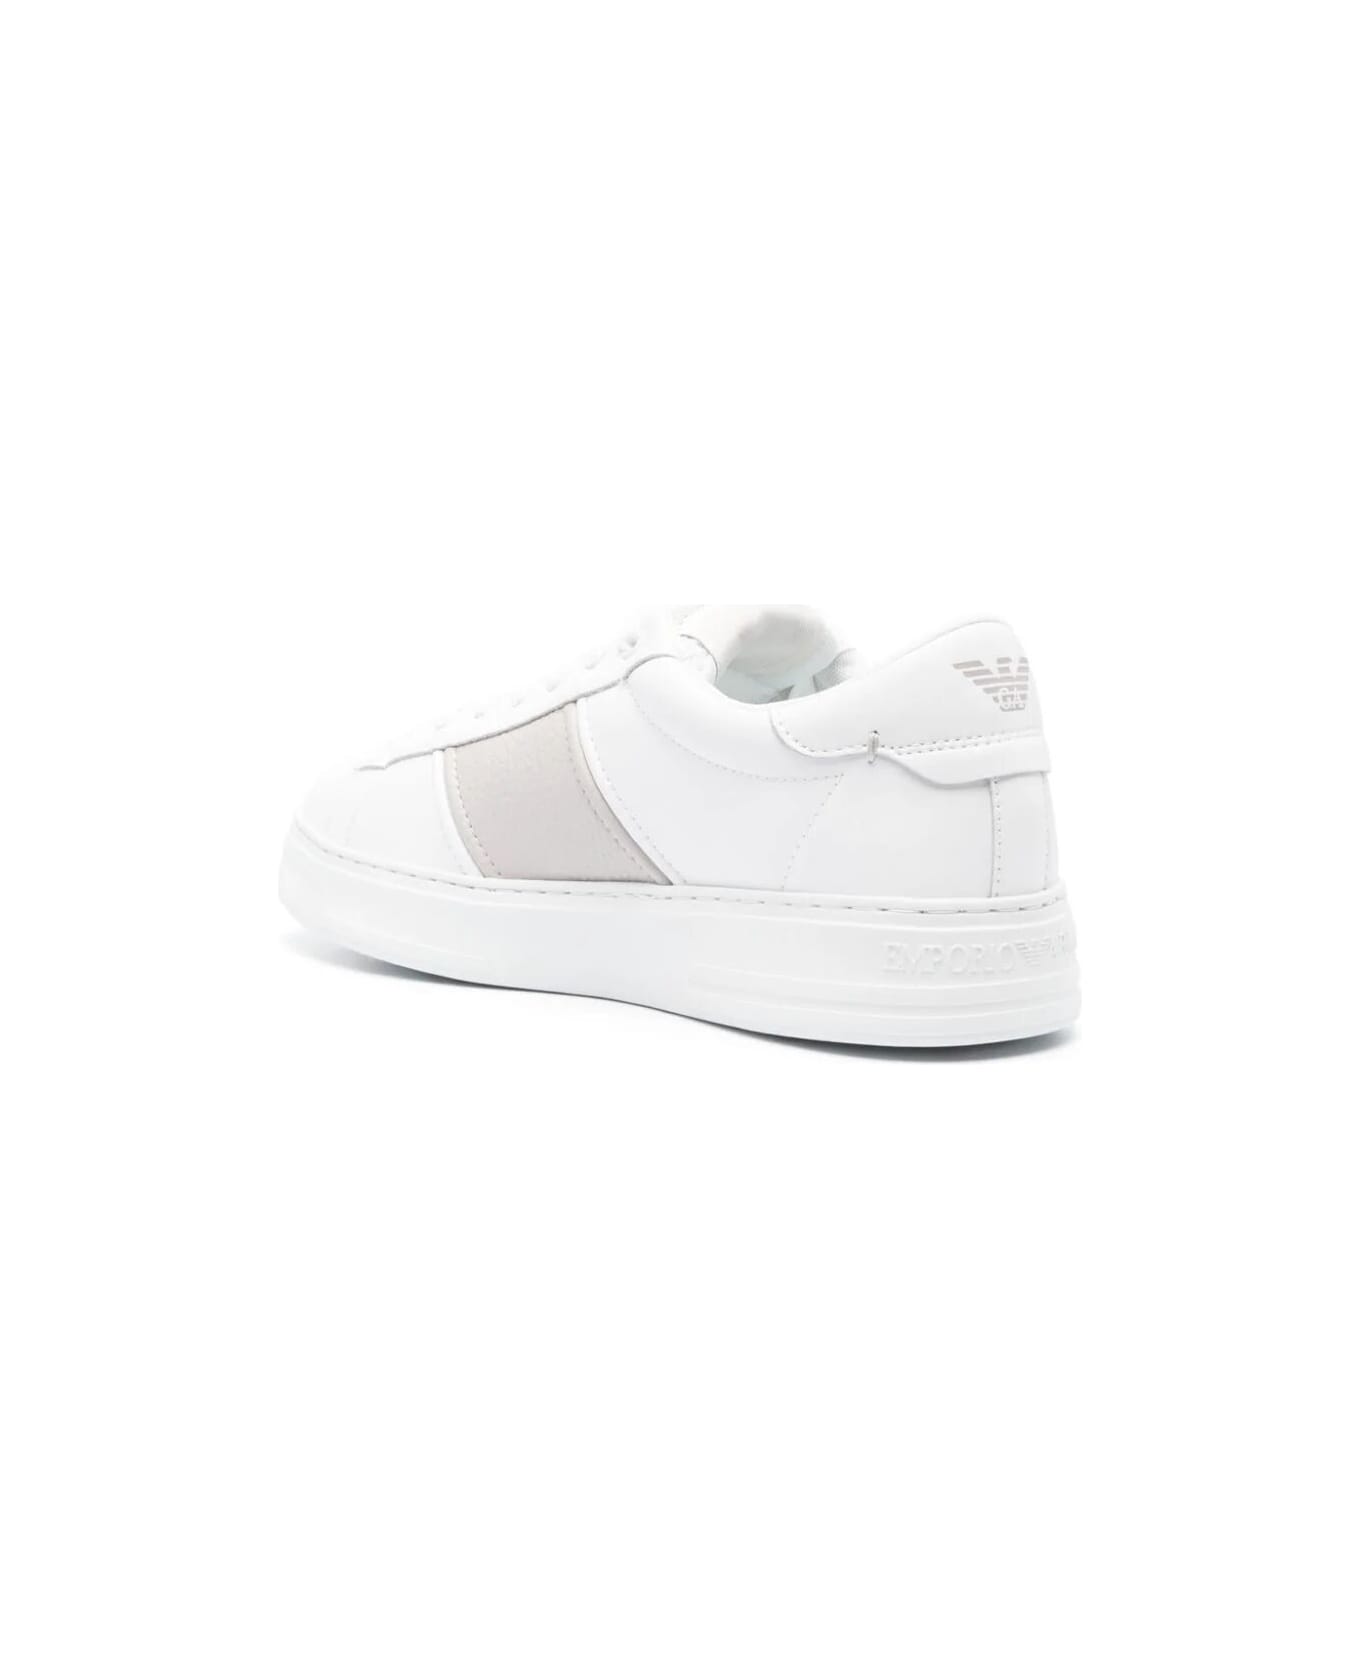 Emporio Armani Sneaker Mesh - Opt White Silver